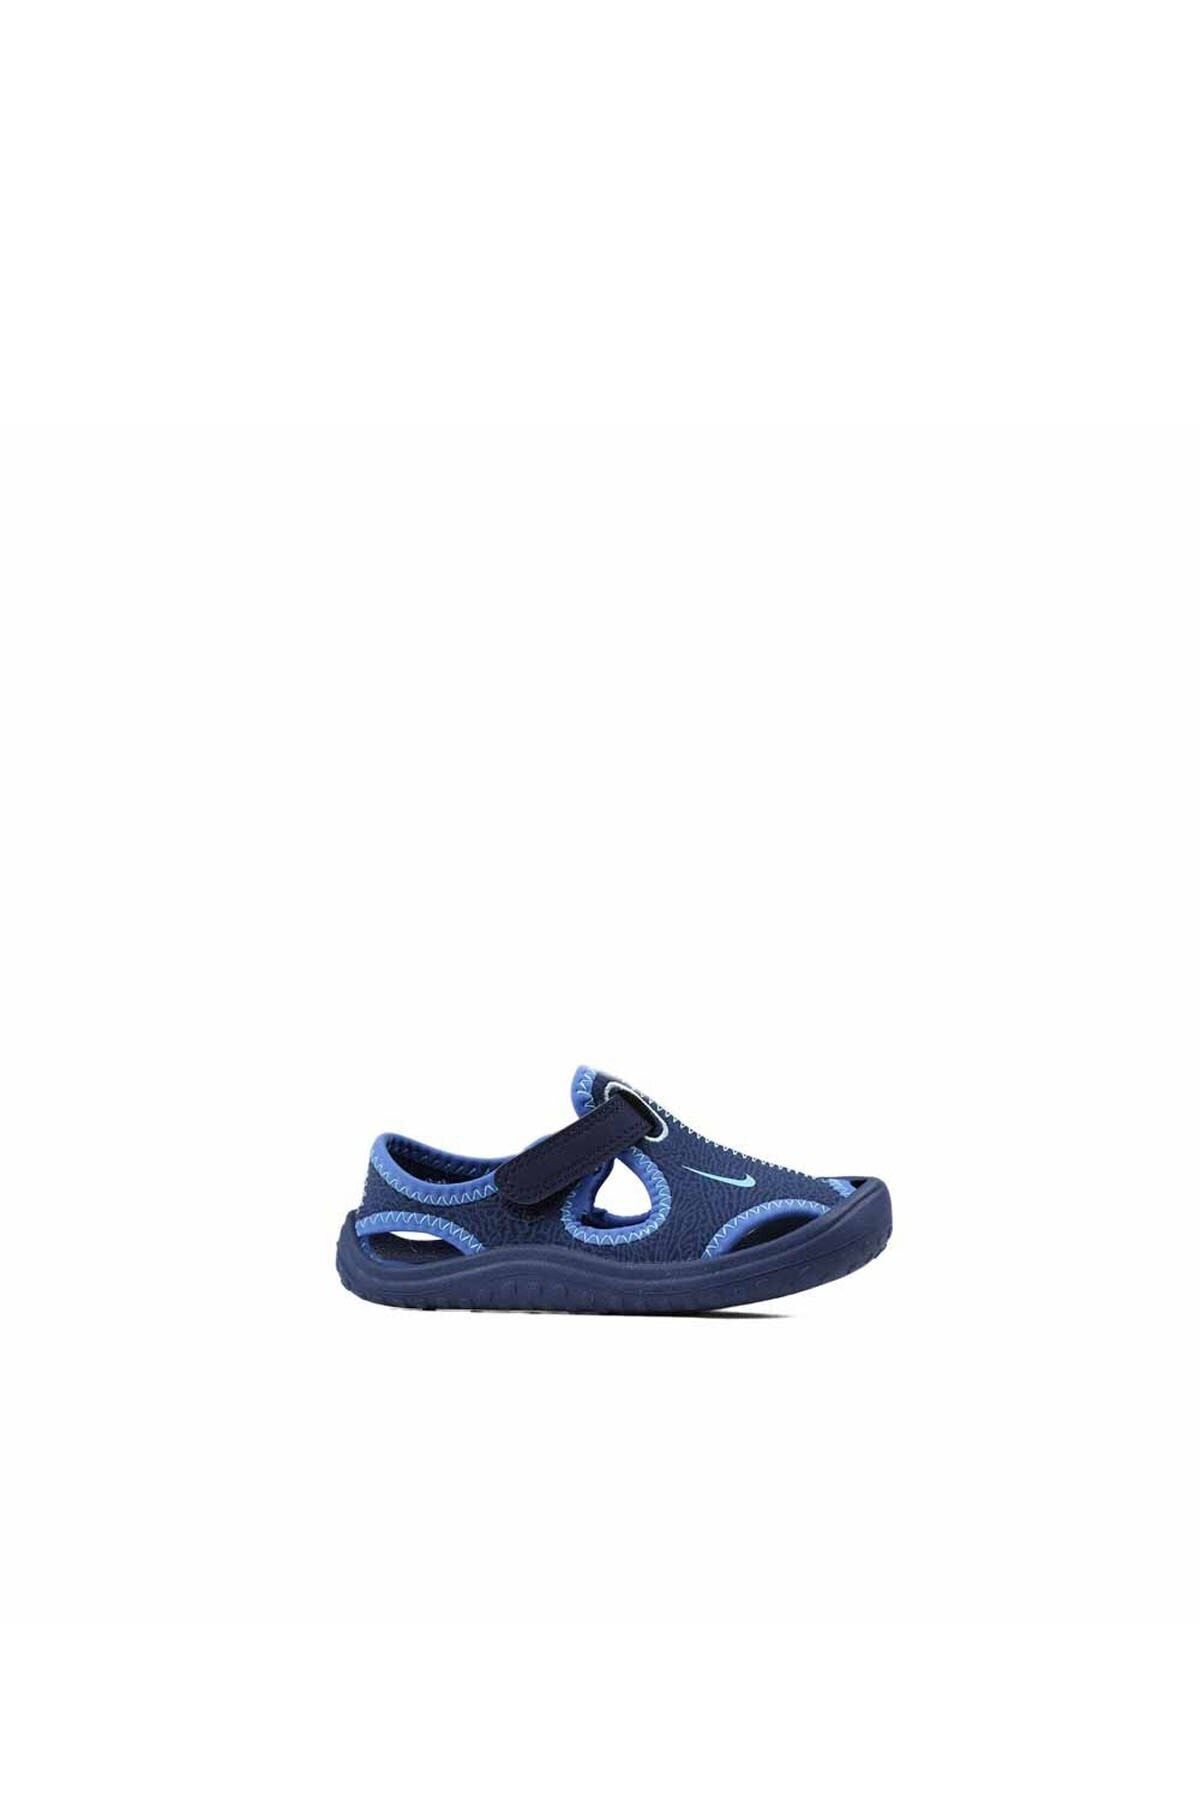 Nike Sunray Protect Td Erkek Sandalet Ayakkabı 903632-400